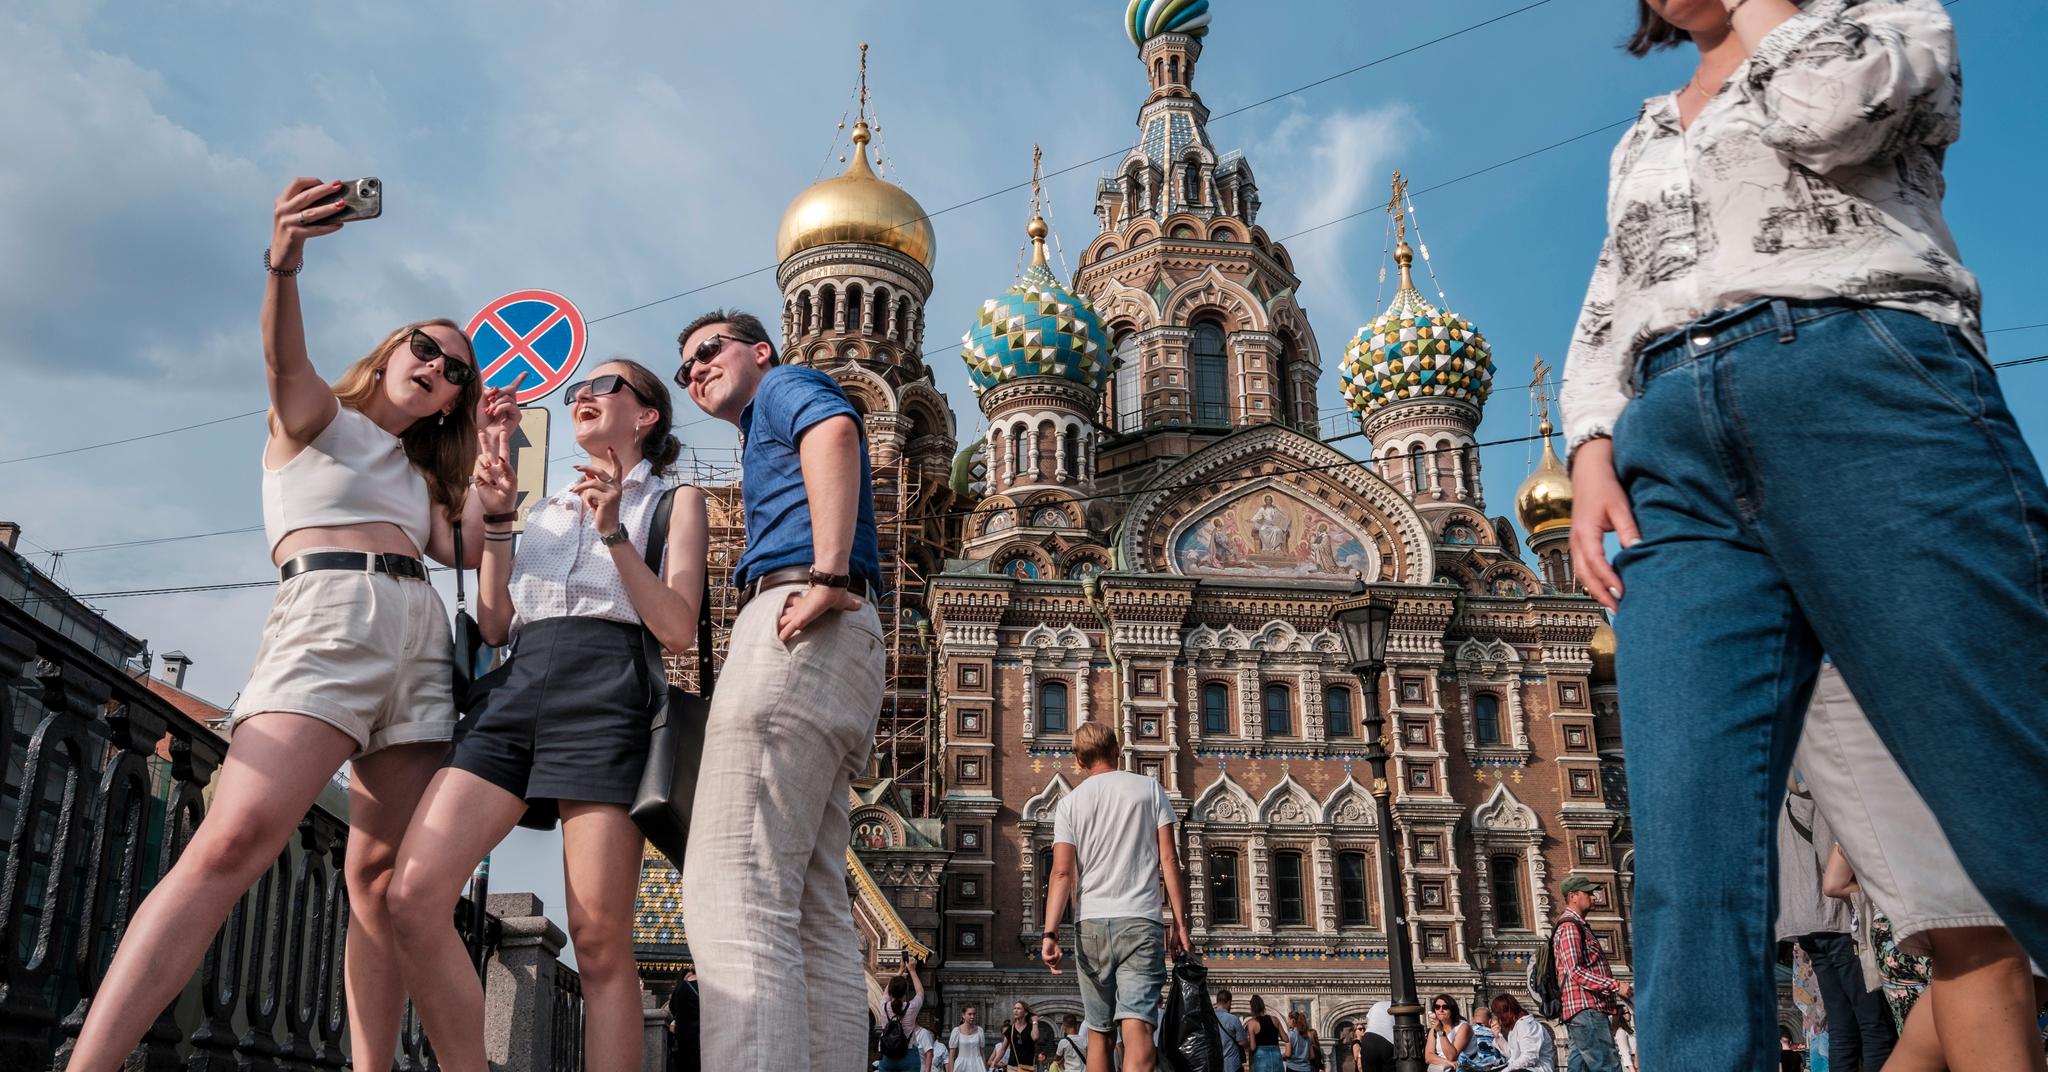 St. Petersburg kryr av russiske turister som nyter det varme været. Det er lite som minner om at dette landet har startet den største krigen i Europa siden andre verdenskrig.